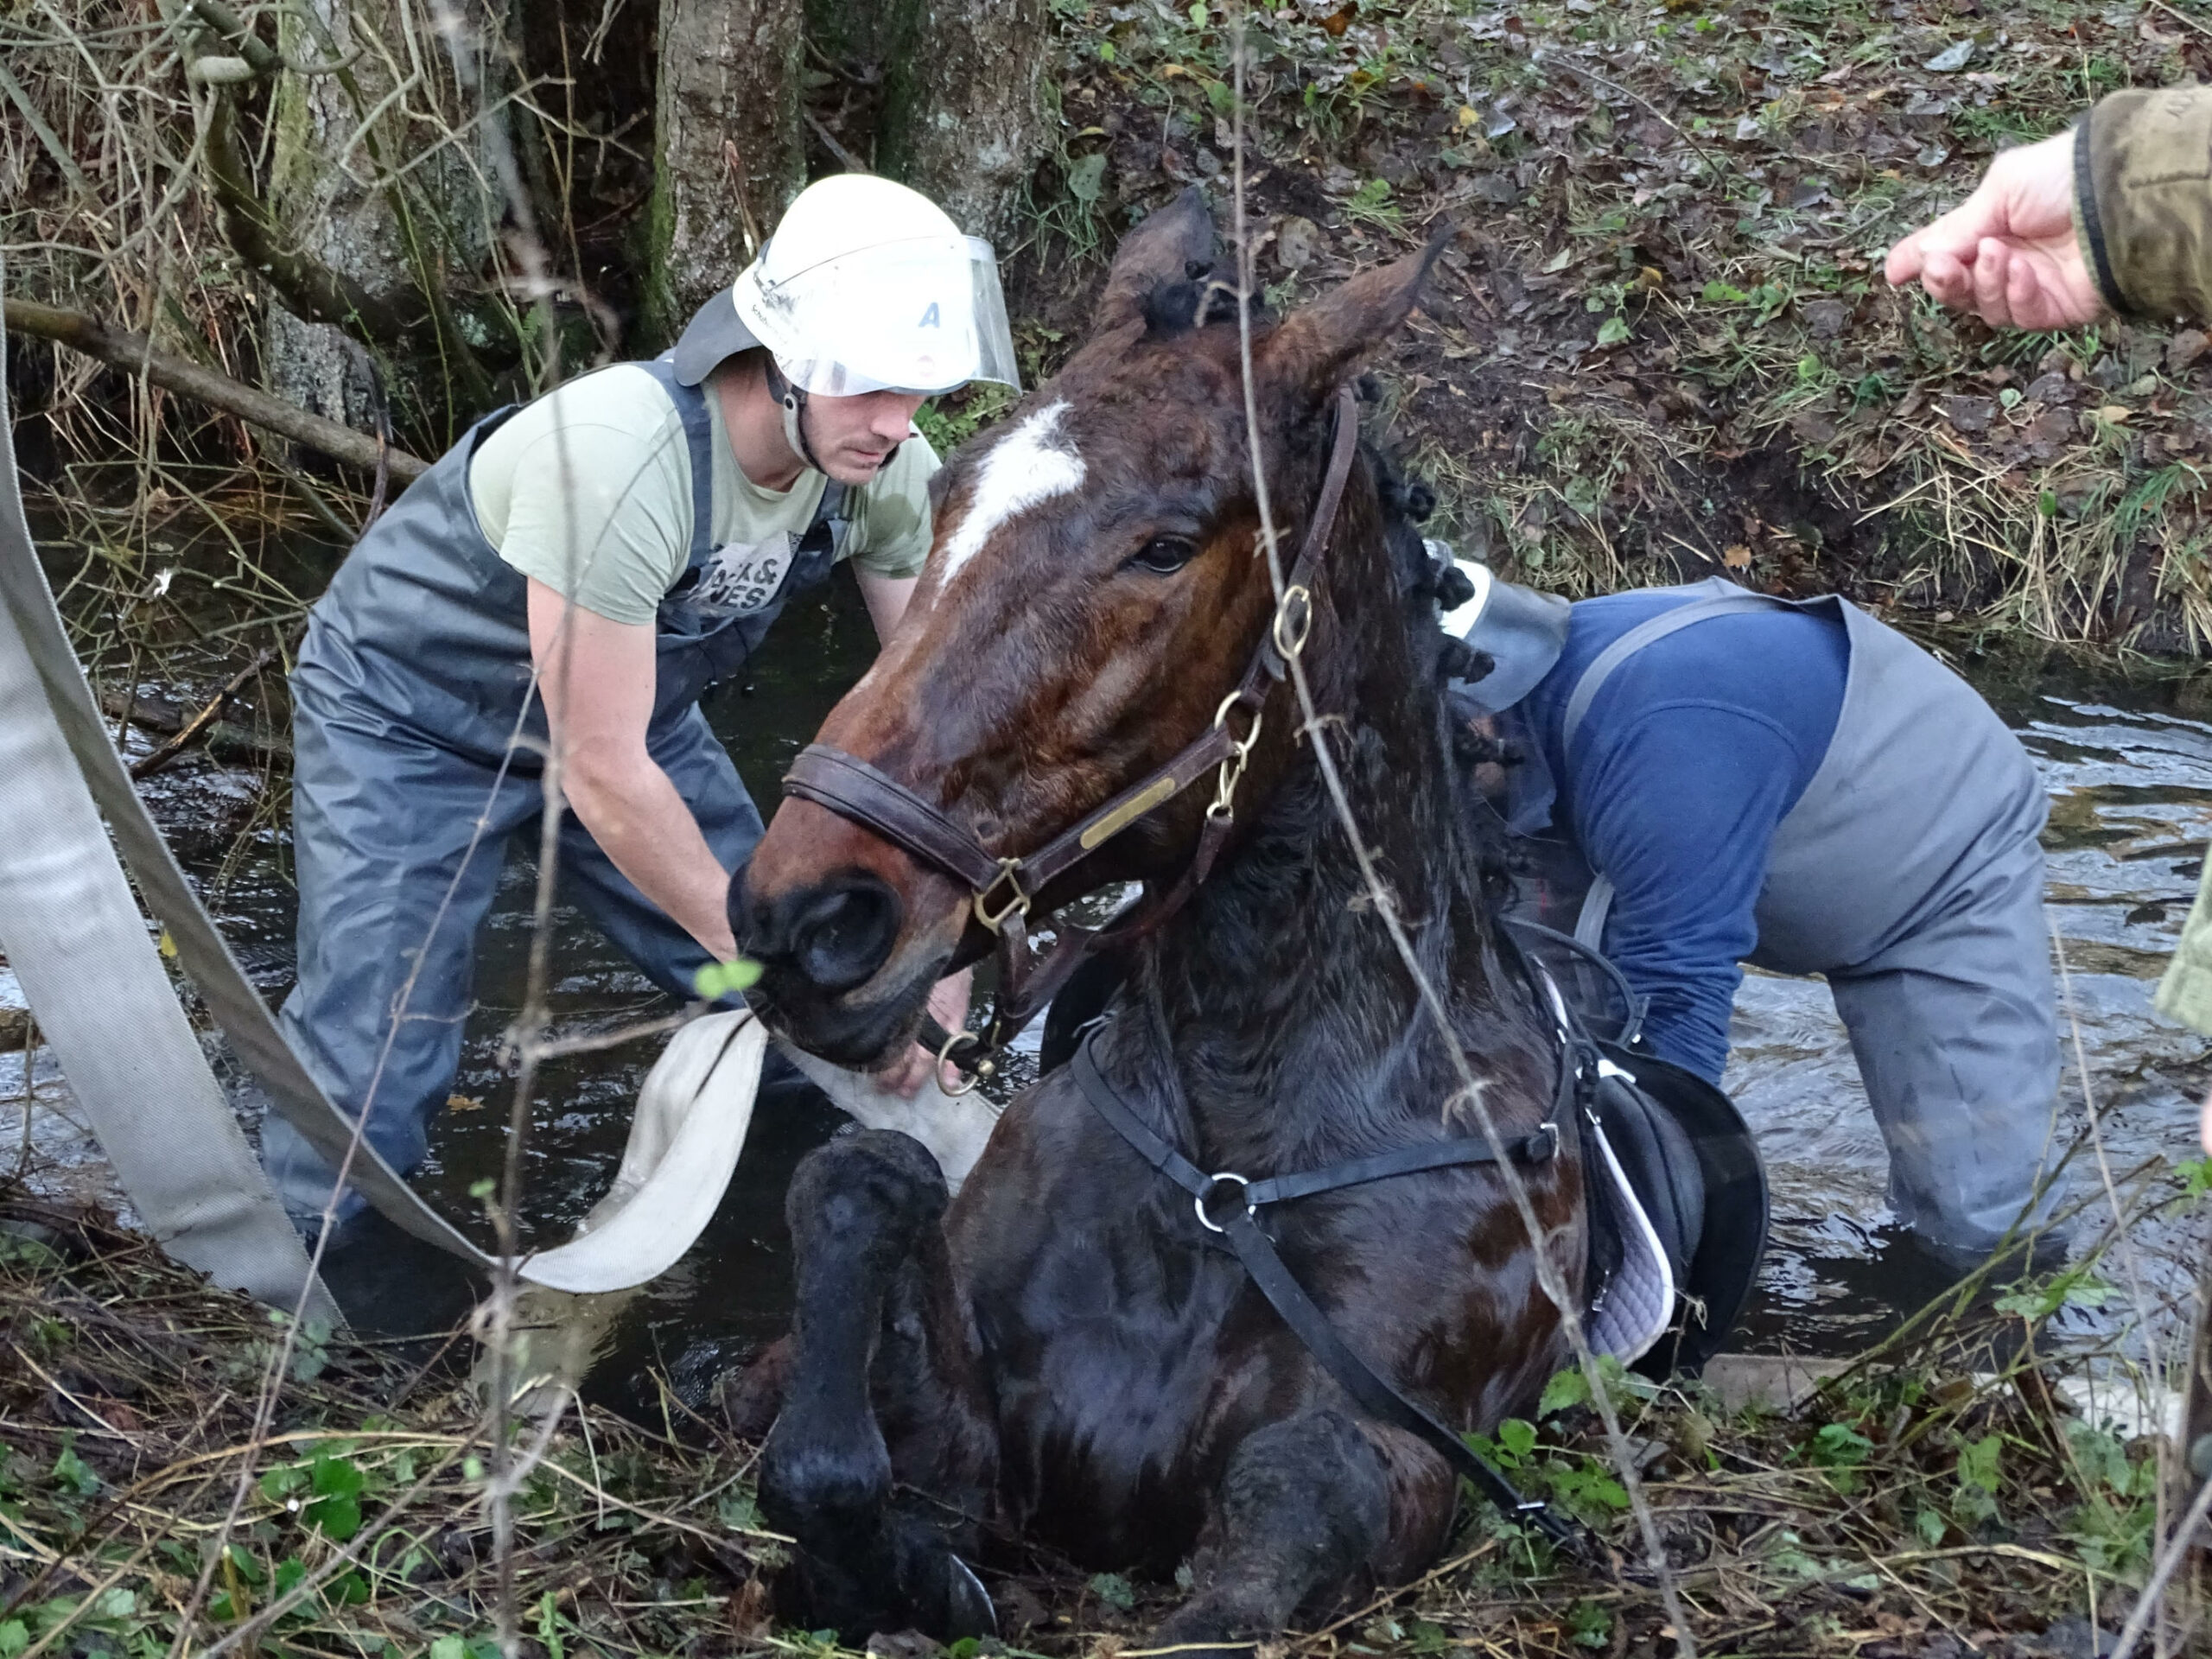 Bei Jagd-Spiel nahe Hamburg – Pferd versinkt in Wassergraben